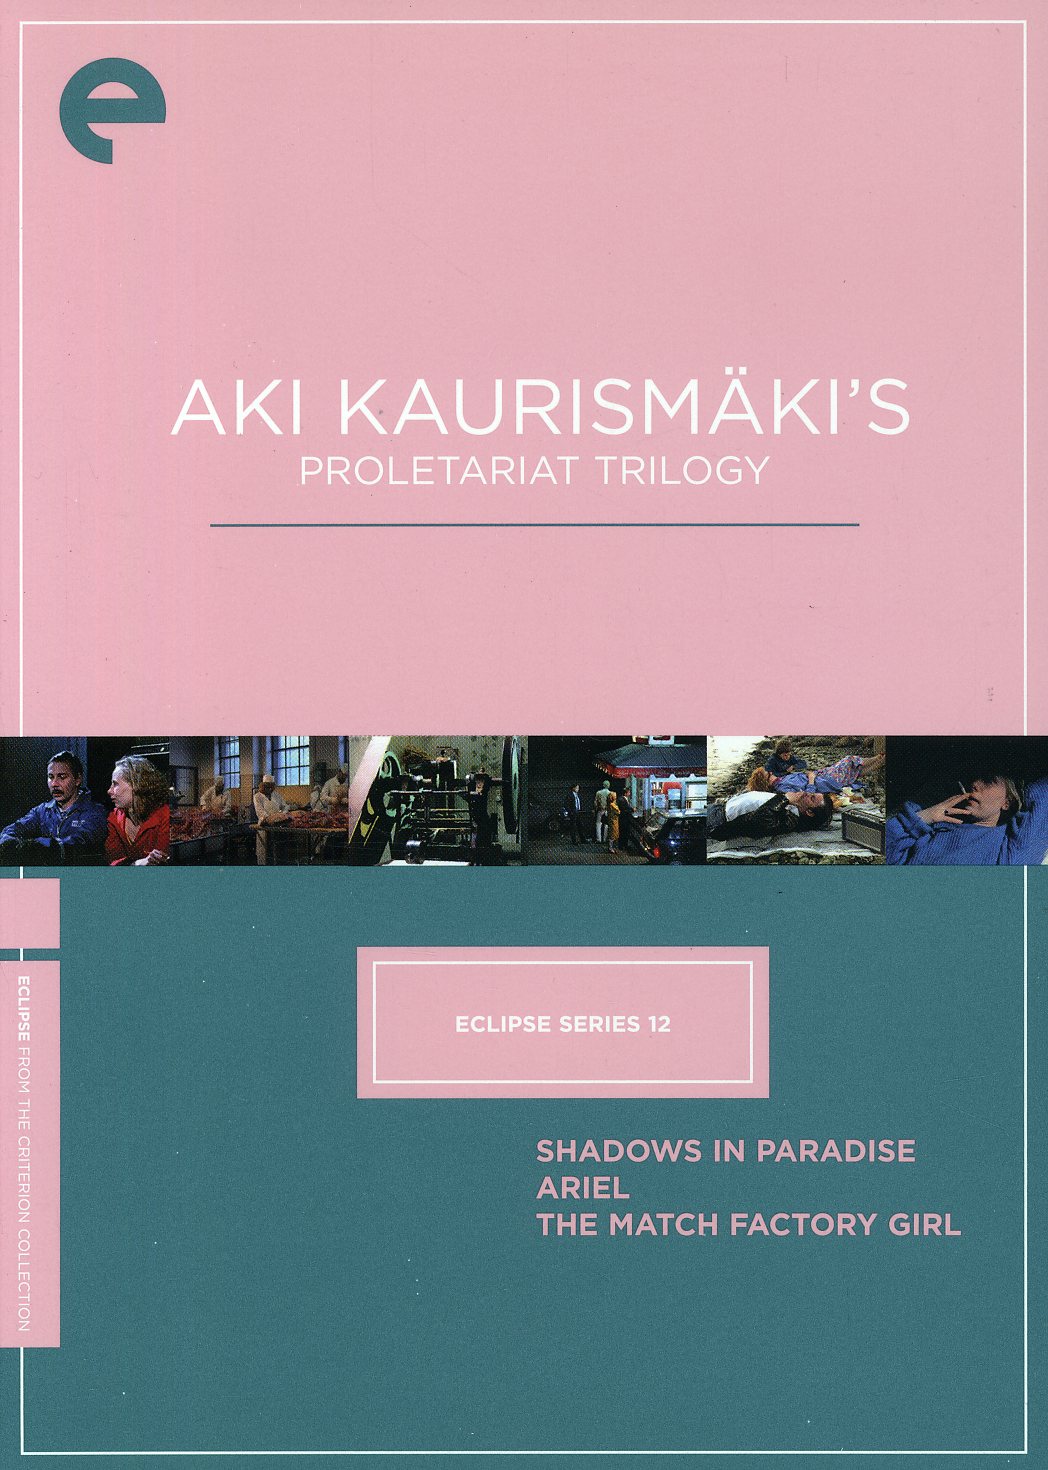 AKI KAURISMAKI'S PROLETARIAT/DVD (3PC)